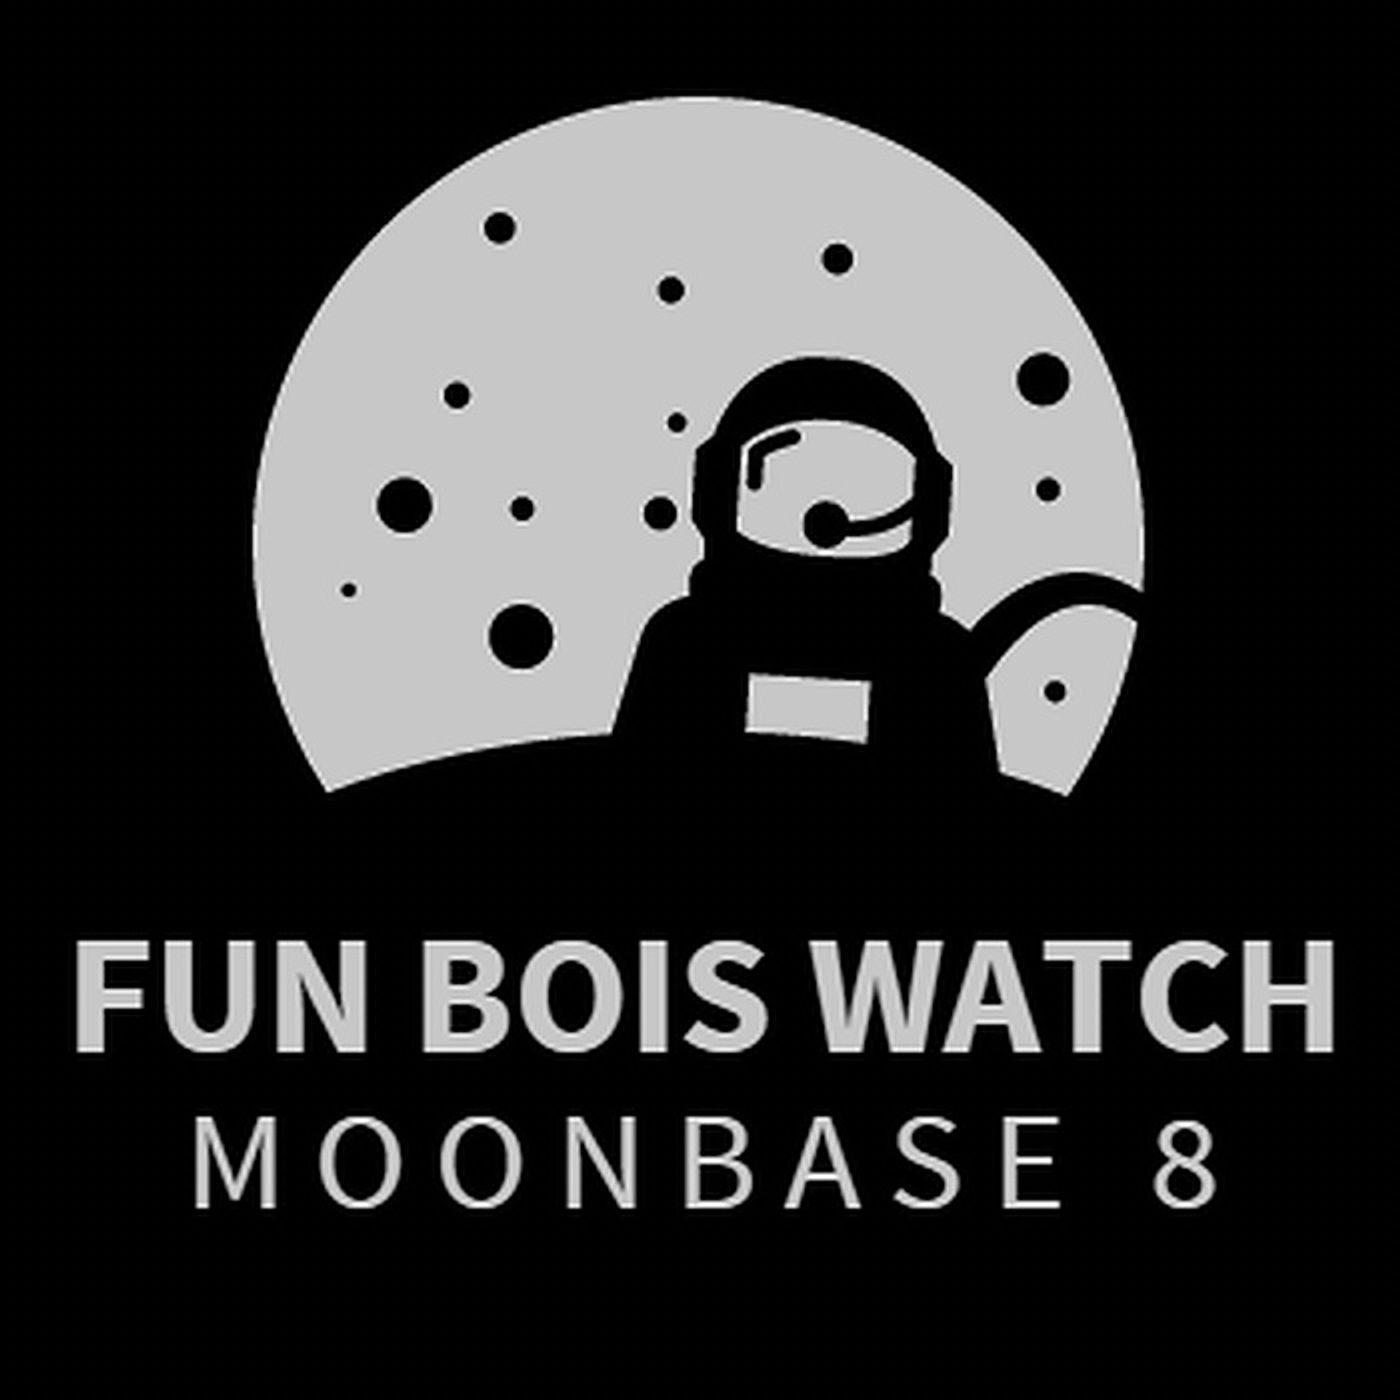 Fun Bois Watch... Moonbase 8